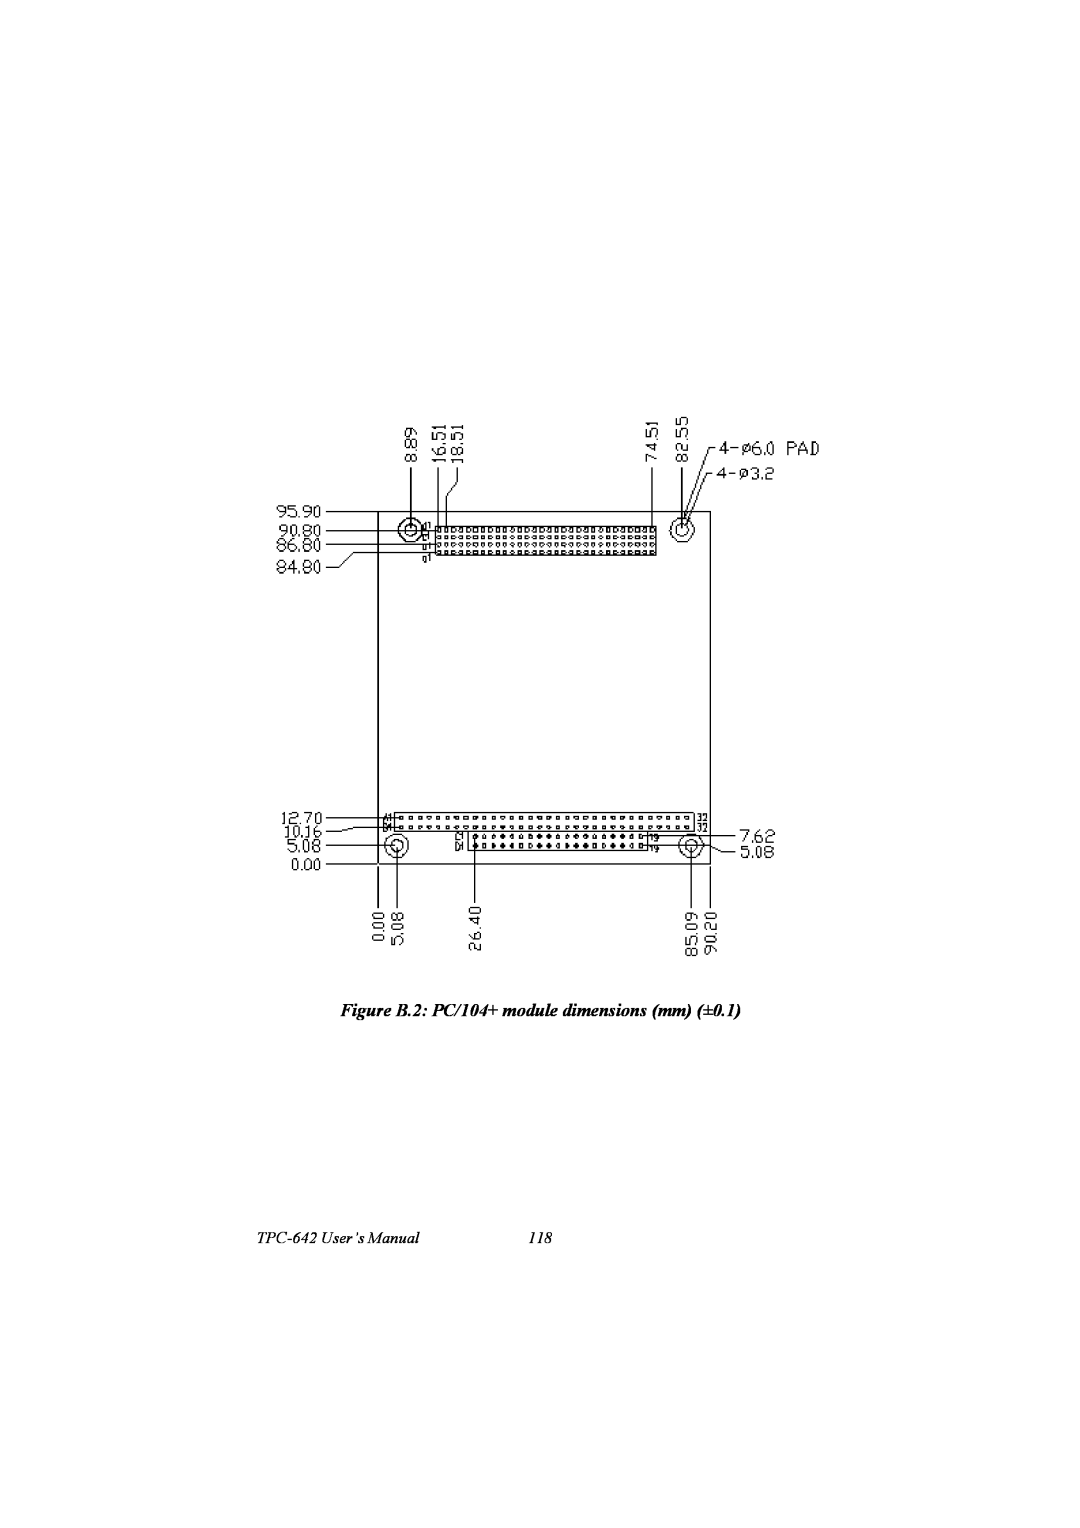 IBM PCM-9575, 100/10 user manual Figure B.2 PC/104+ module dimensions mm ±0.1, TPC-642 User’s Manual 